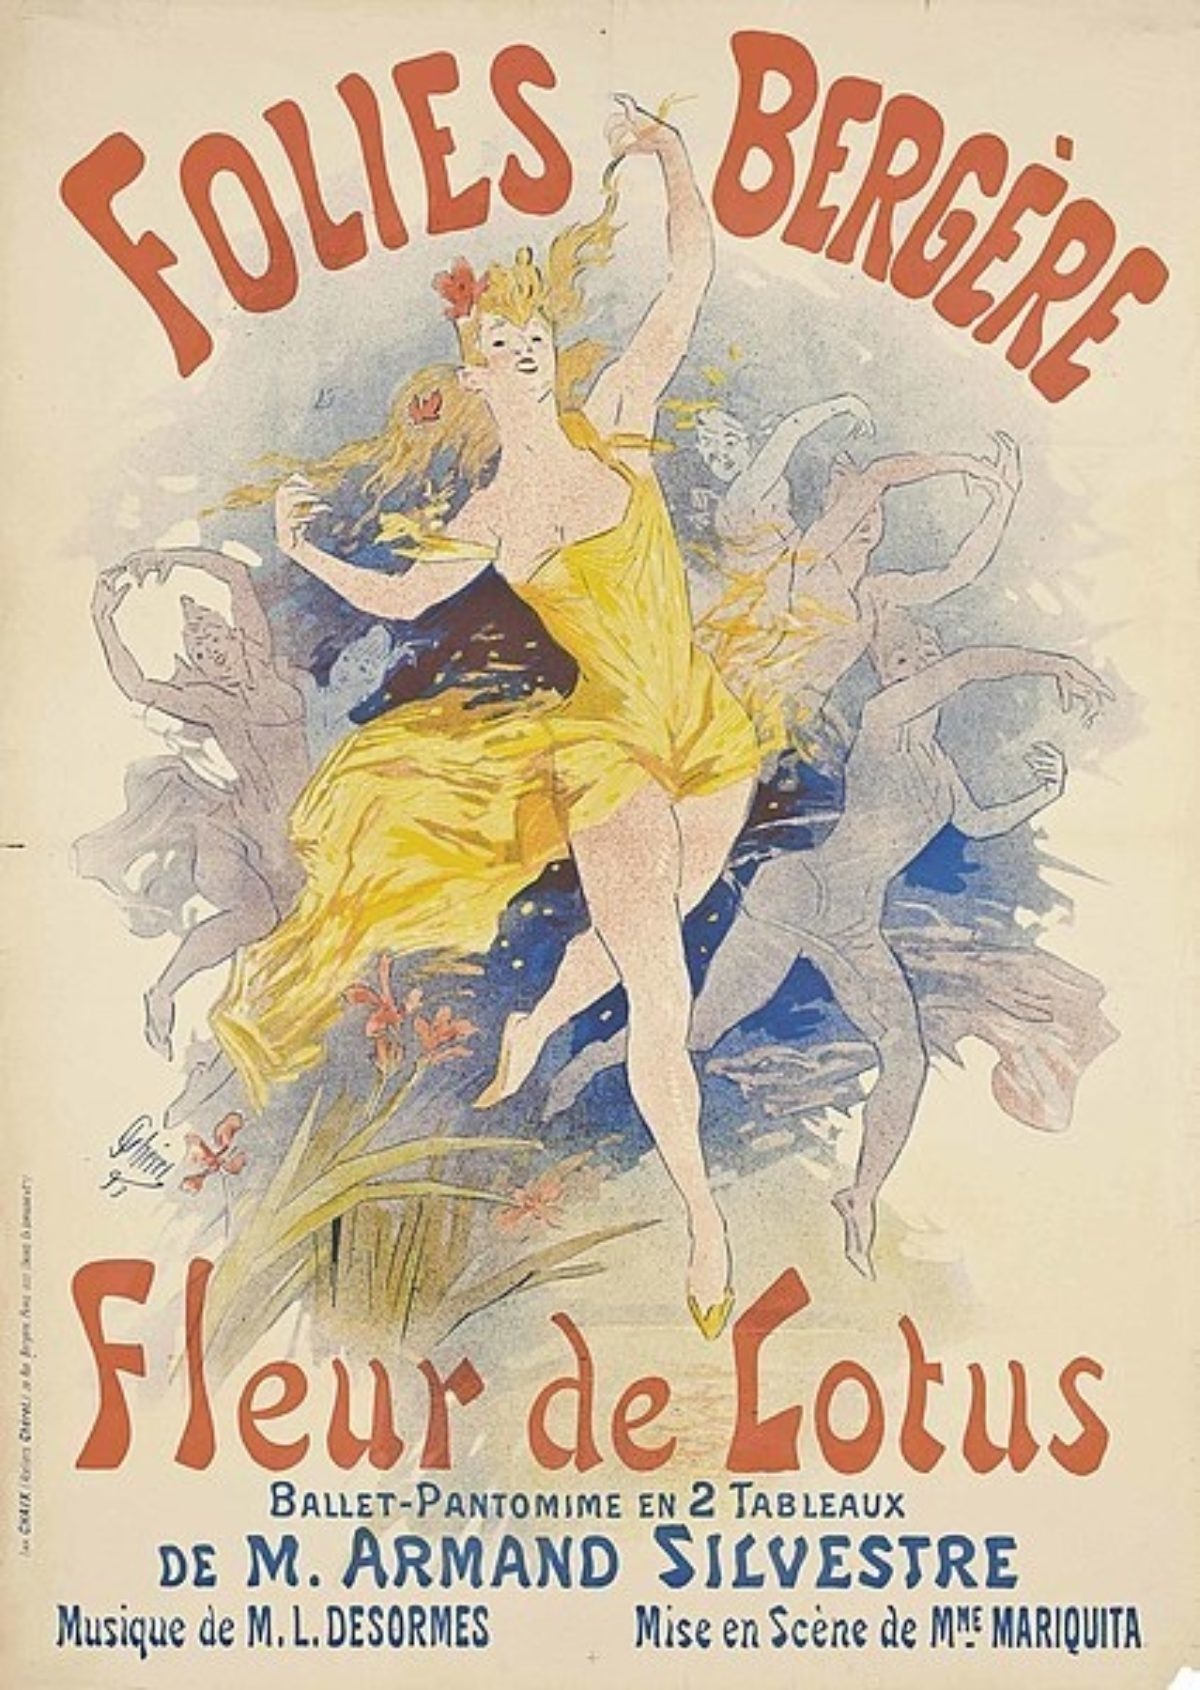 Folies-Bergere-Cheret_190521_200012